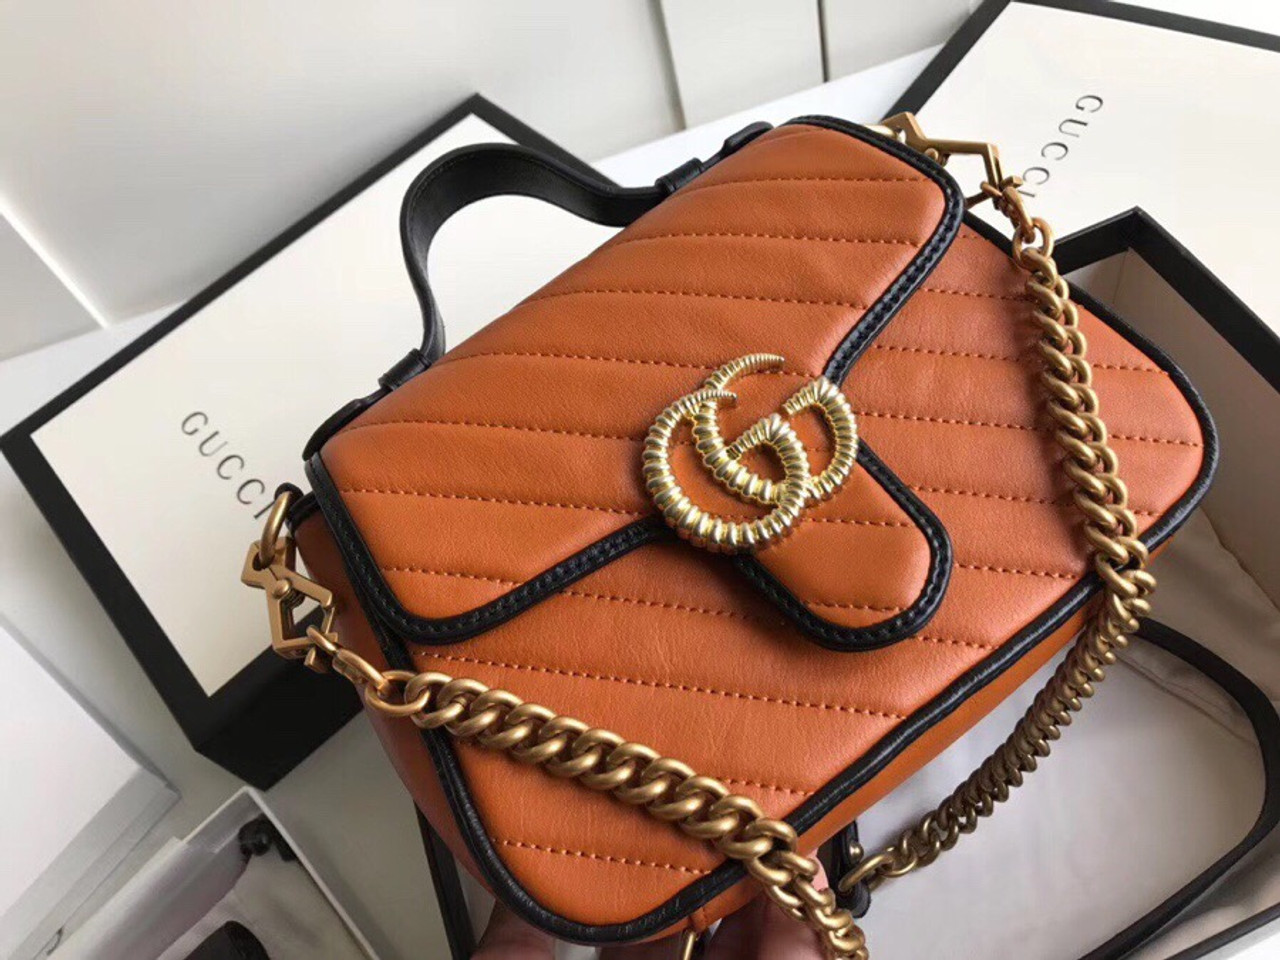 Gucci GG Marmont small top handle bag Cognac Leather - Bella Vita Moda